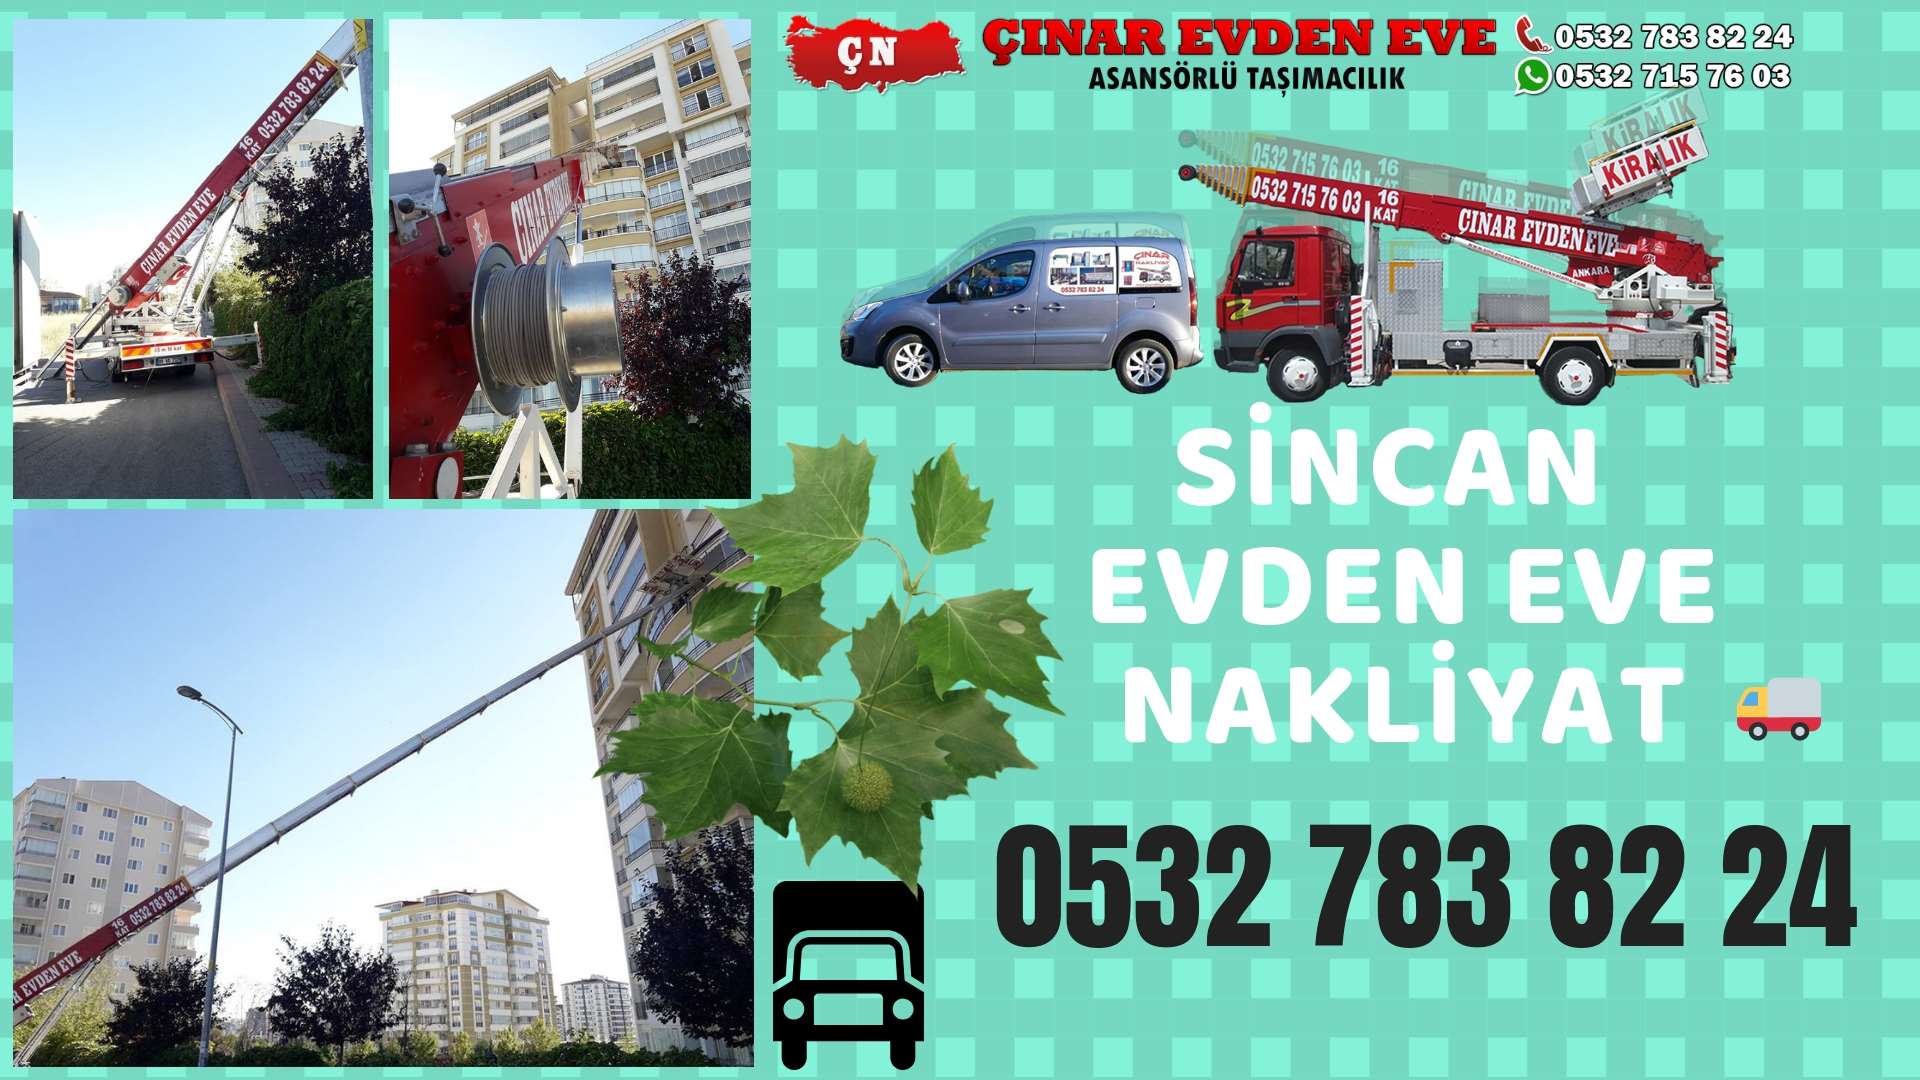 Ankara Yapracık sincan ev eşya taşımacılığı, sincan evden eve 0532 715 76 03